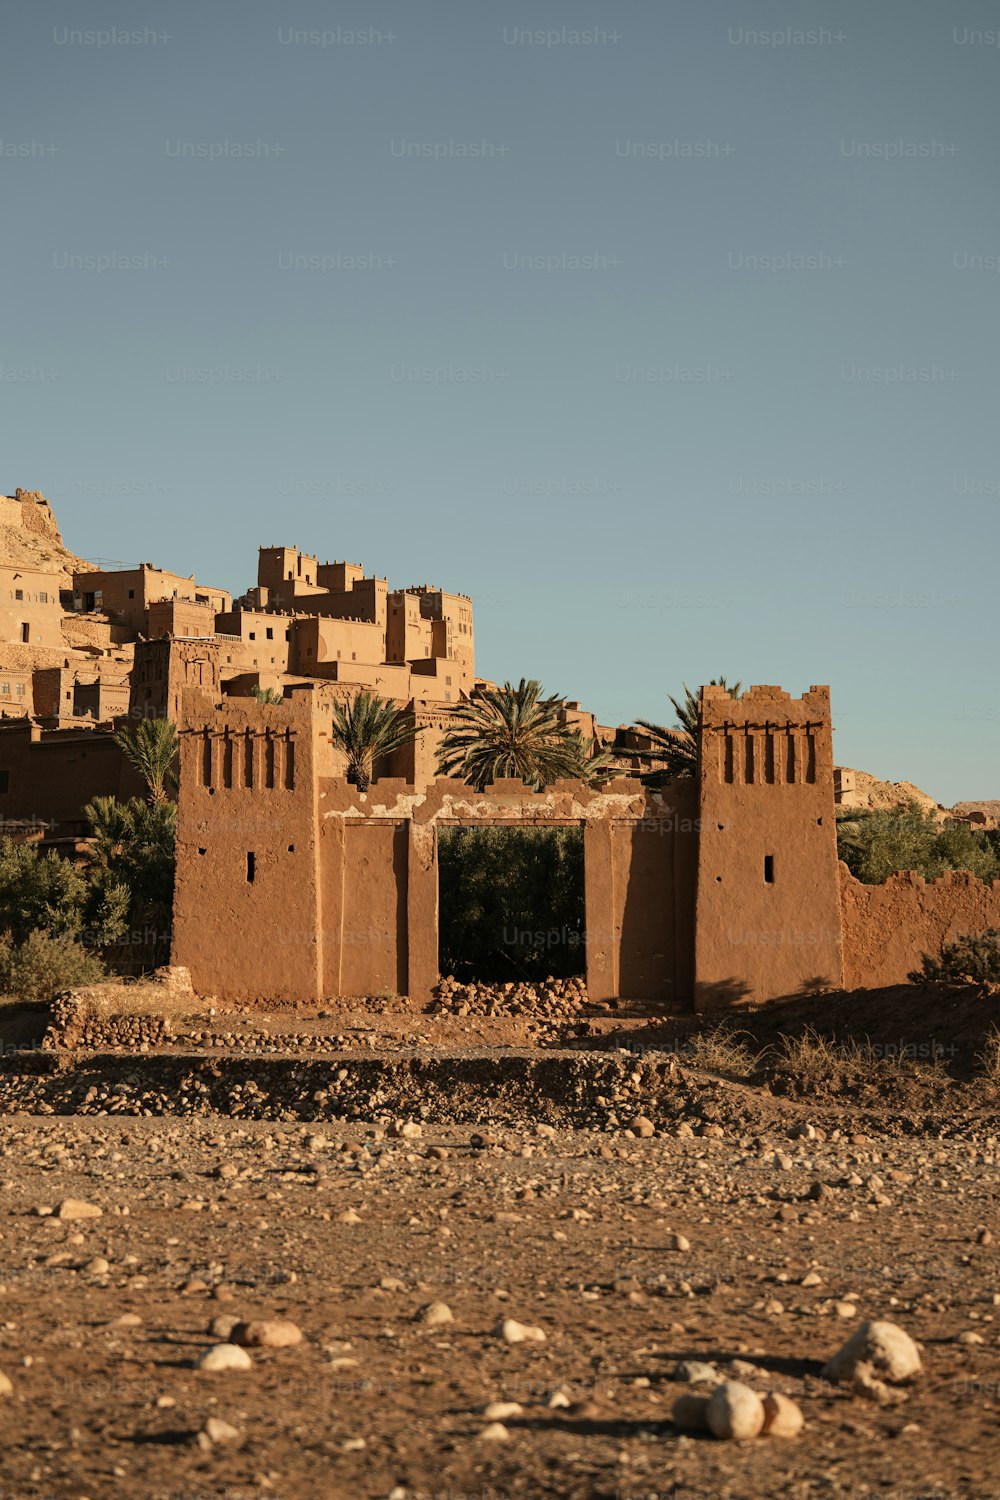 Un edificio marrón sentado en medio de un desierto